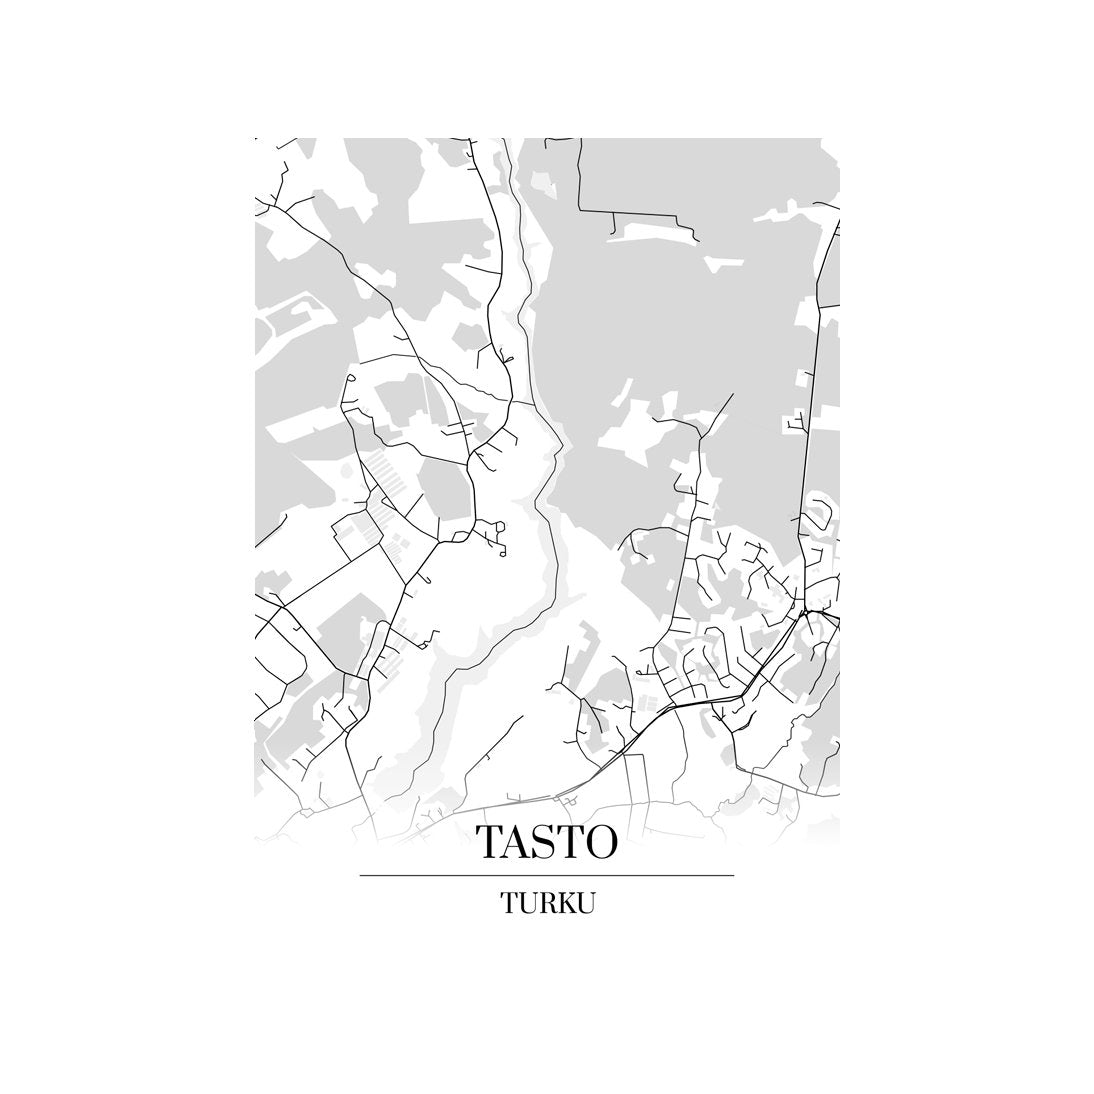 Tasto